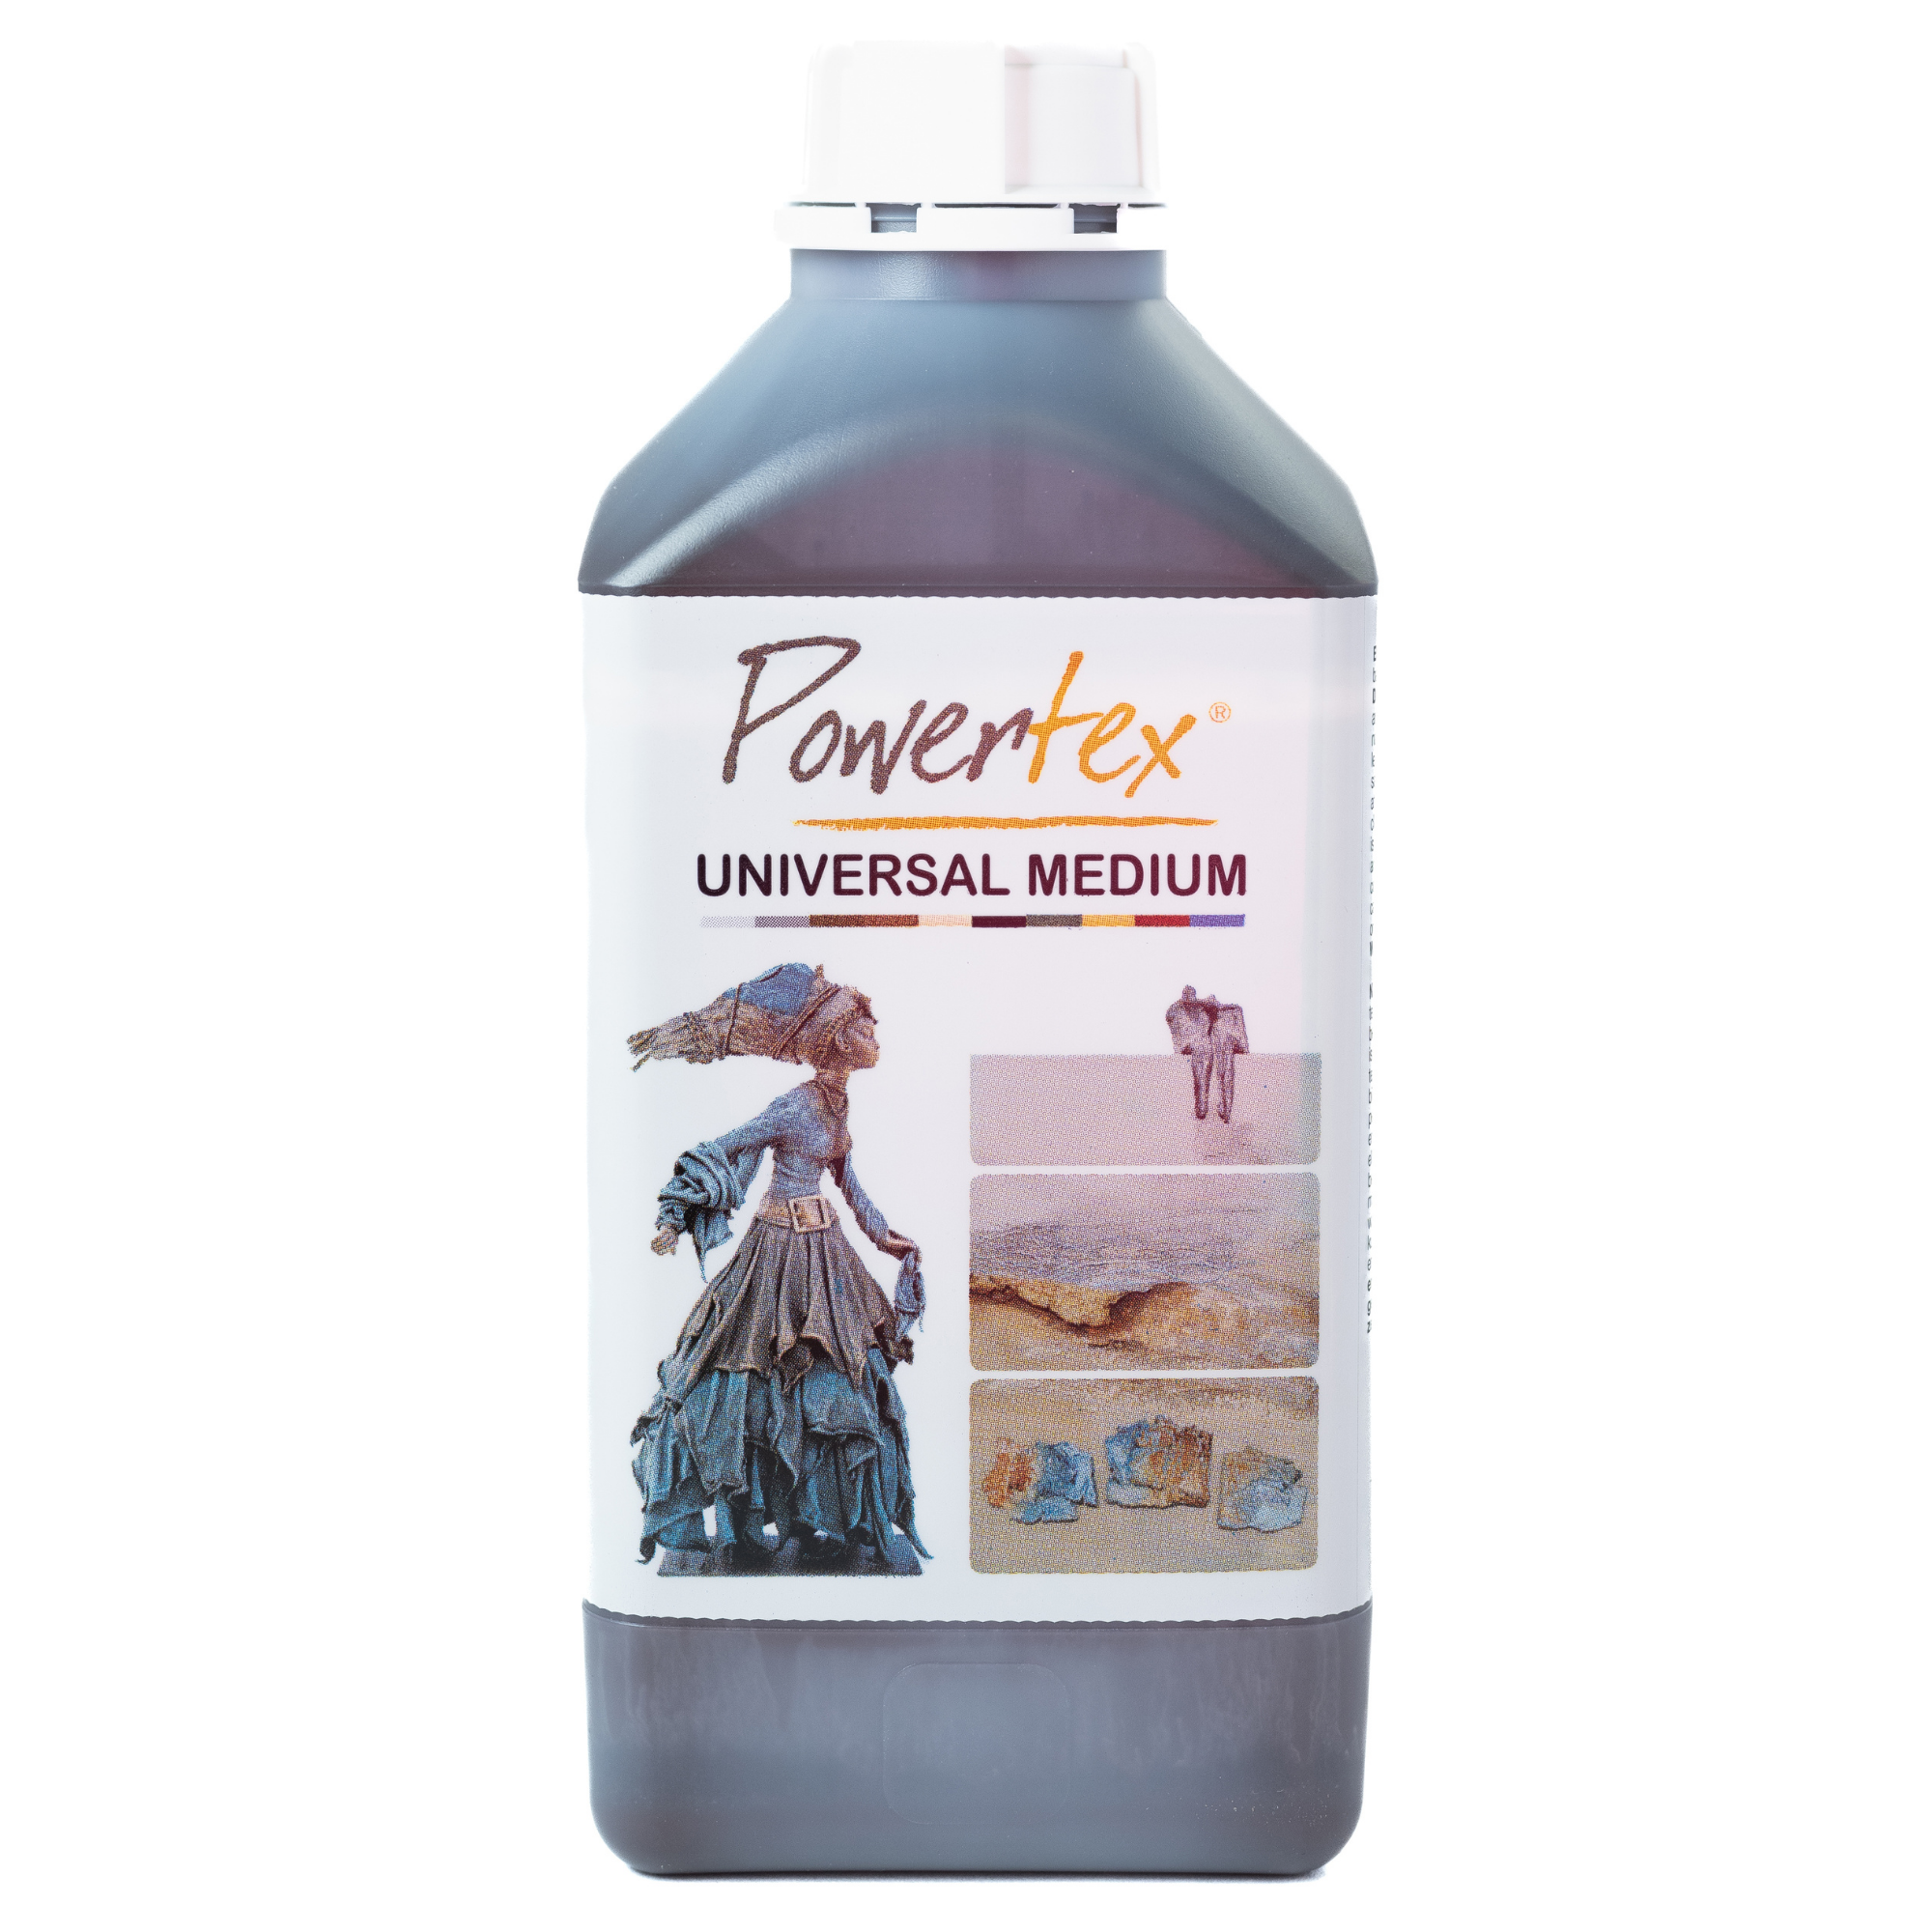 Powertex Universal Medium Bronze 1000g